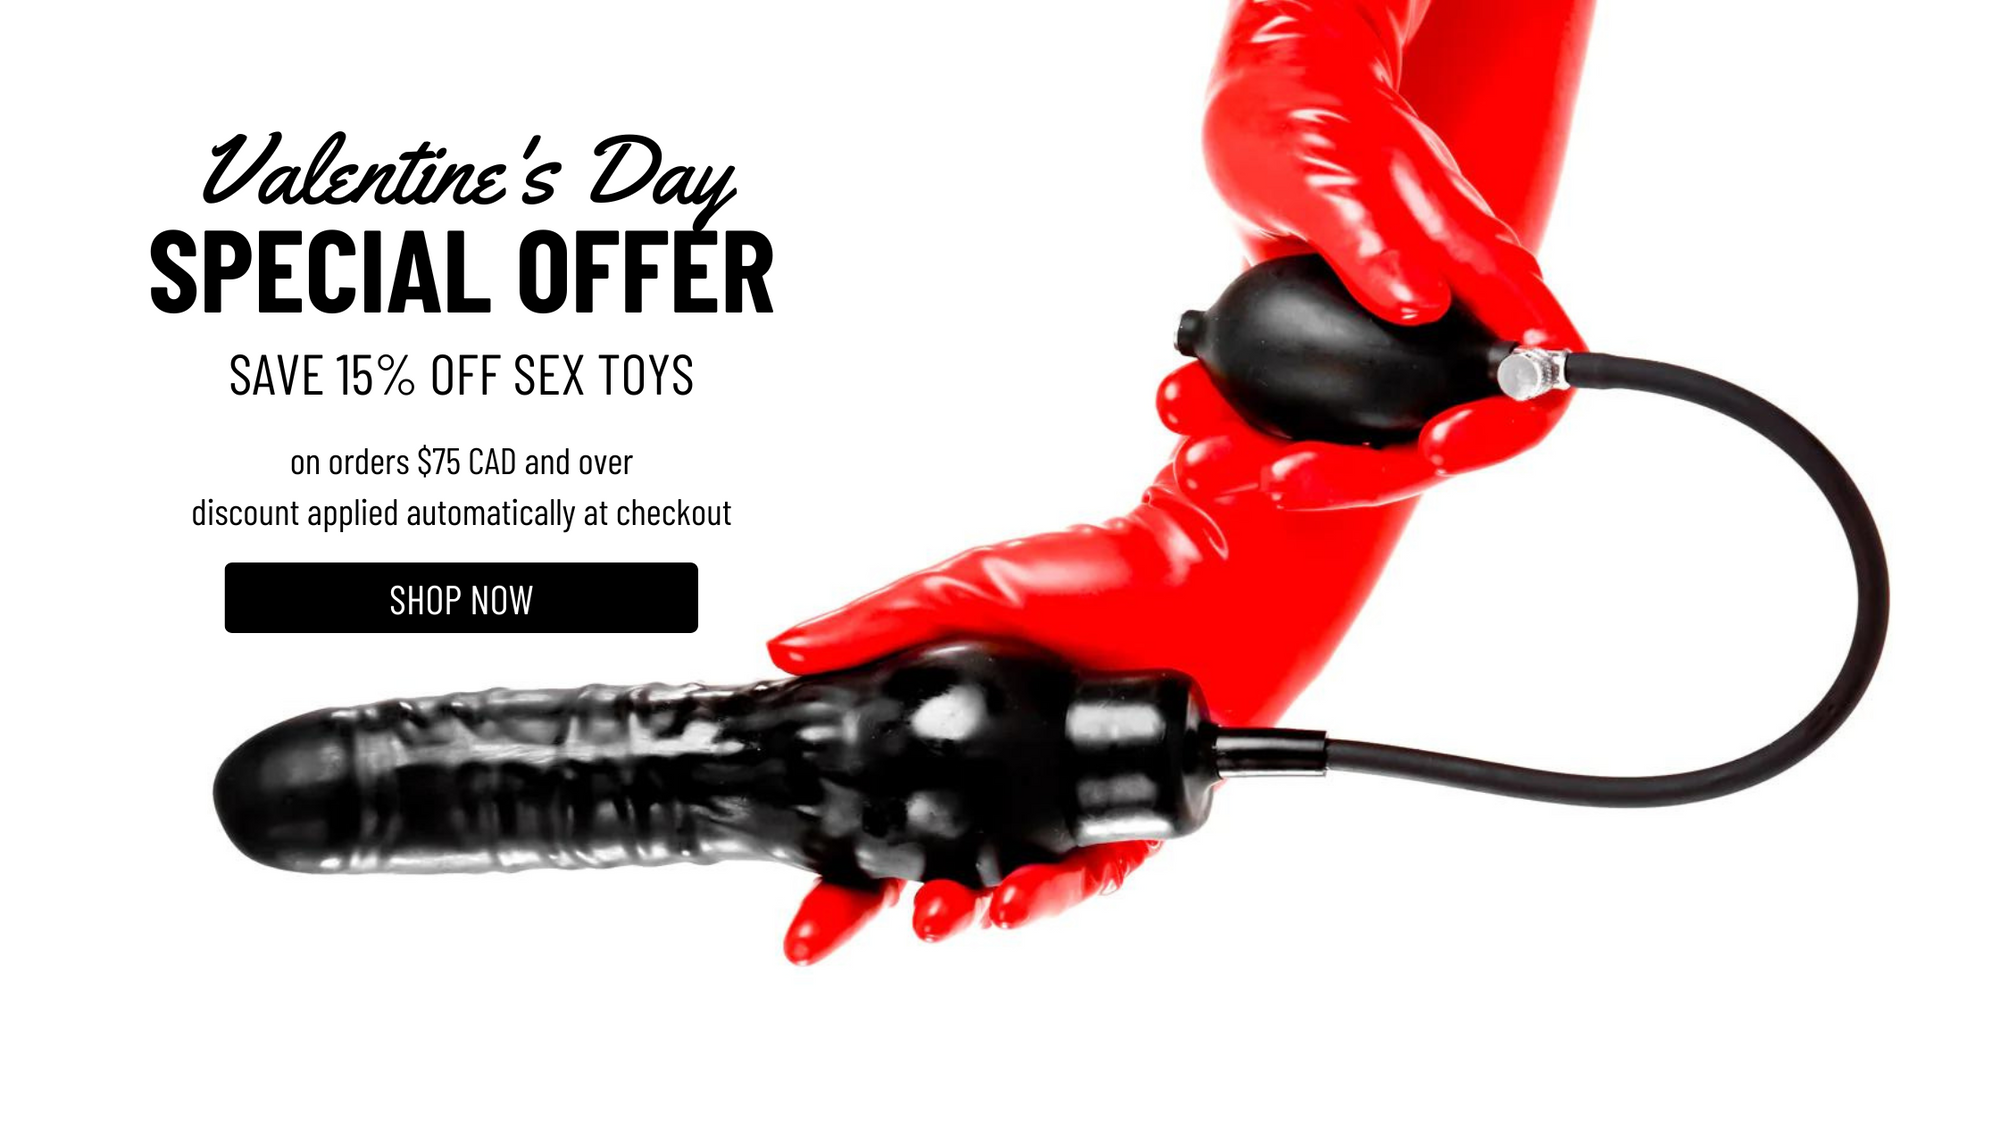 15% off sex toys sale anouncement